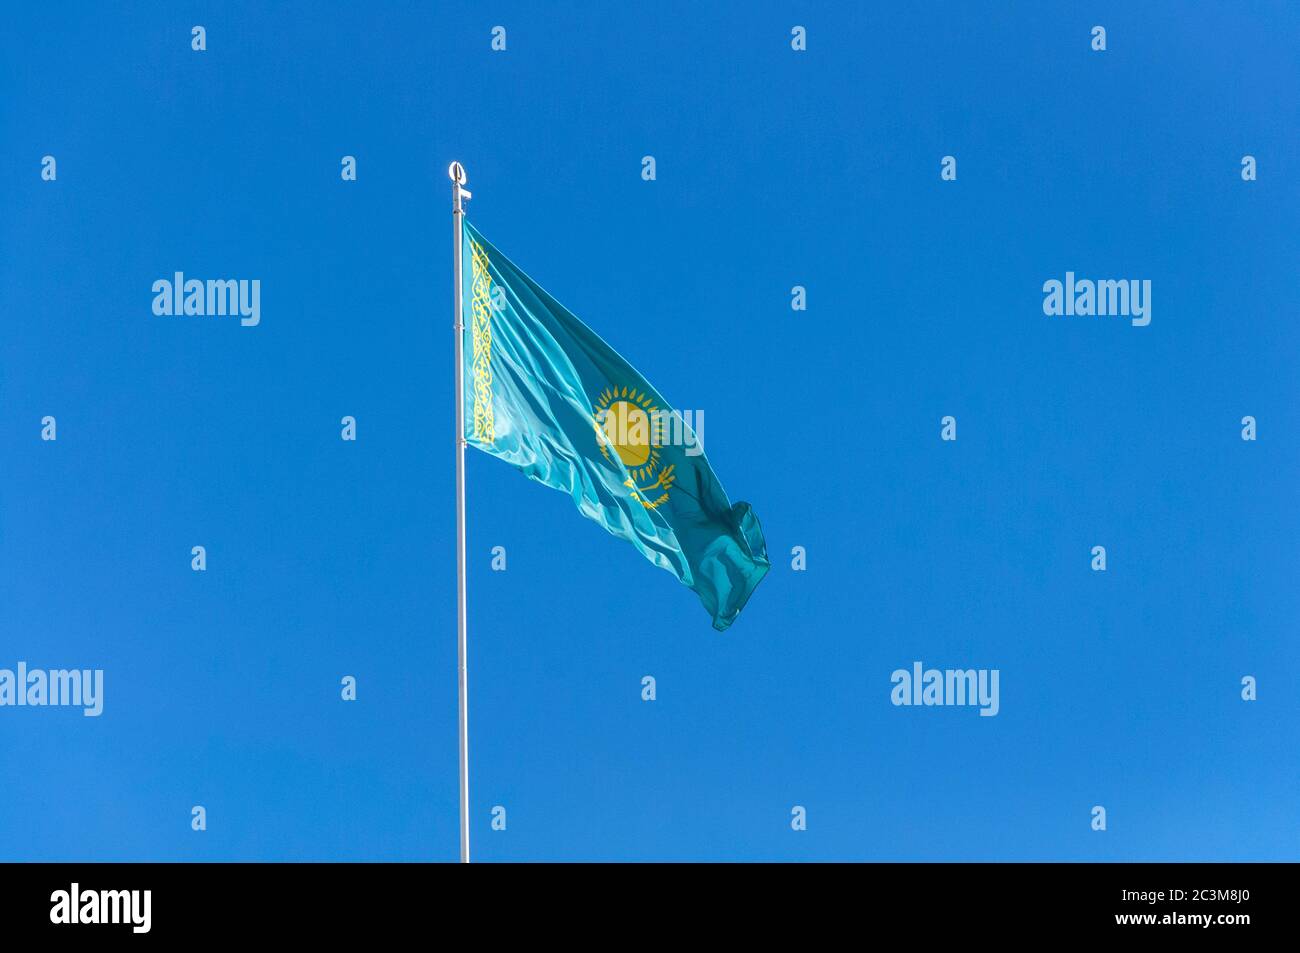 Kazakhstan flags waving Stock Photo by ©borjomi88 118197558